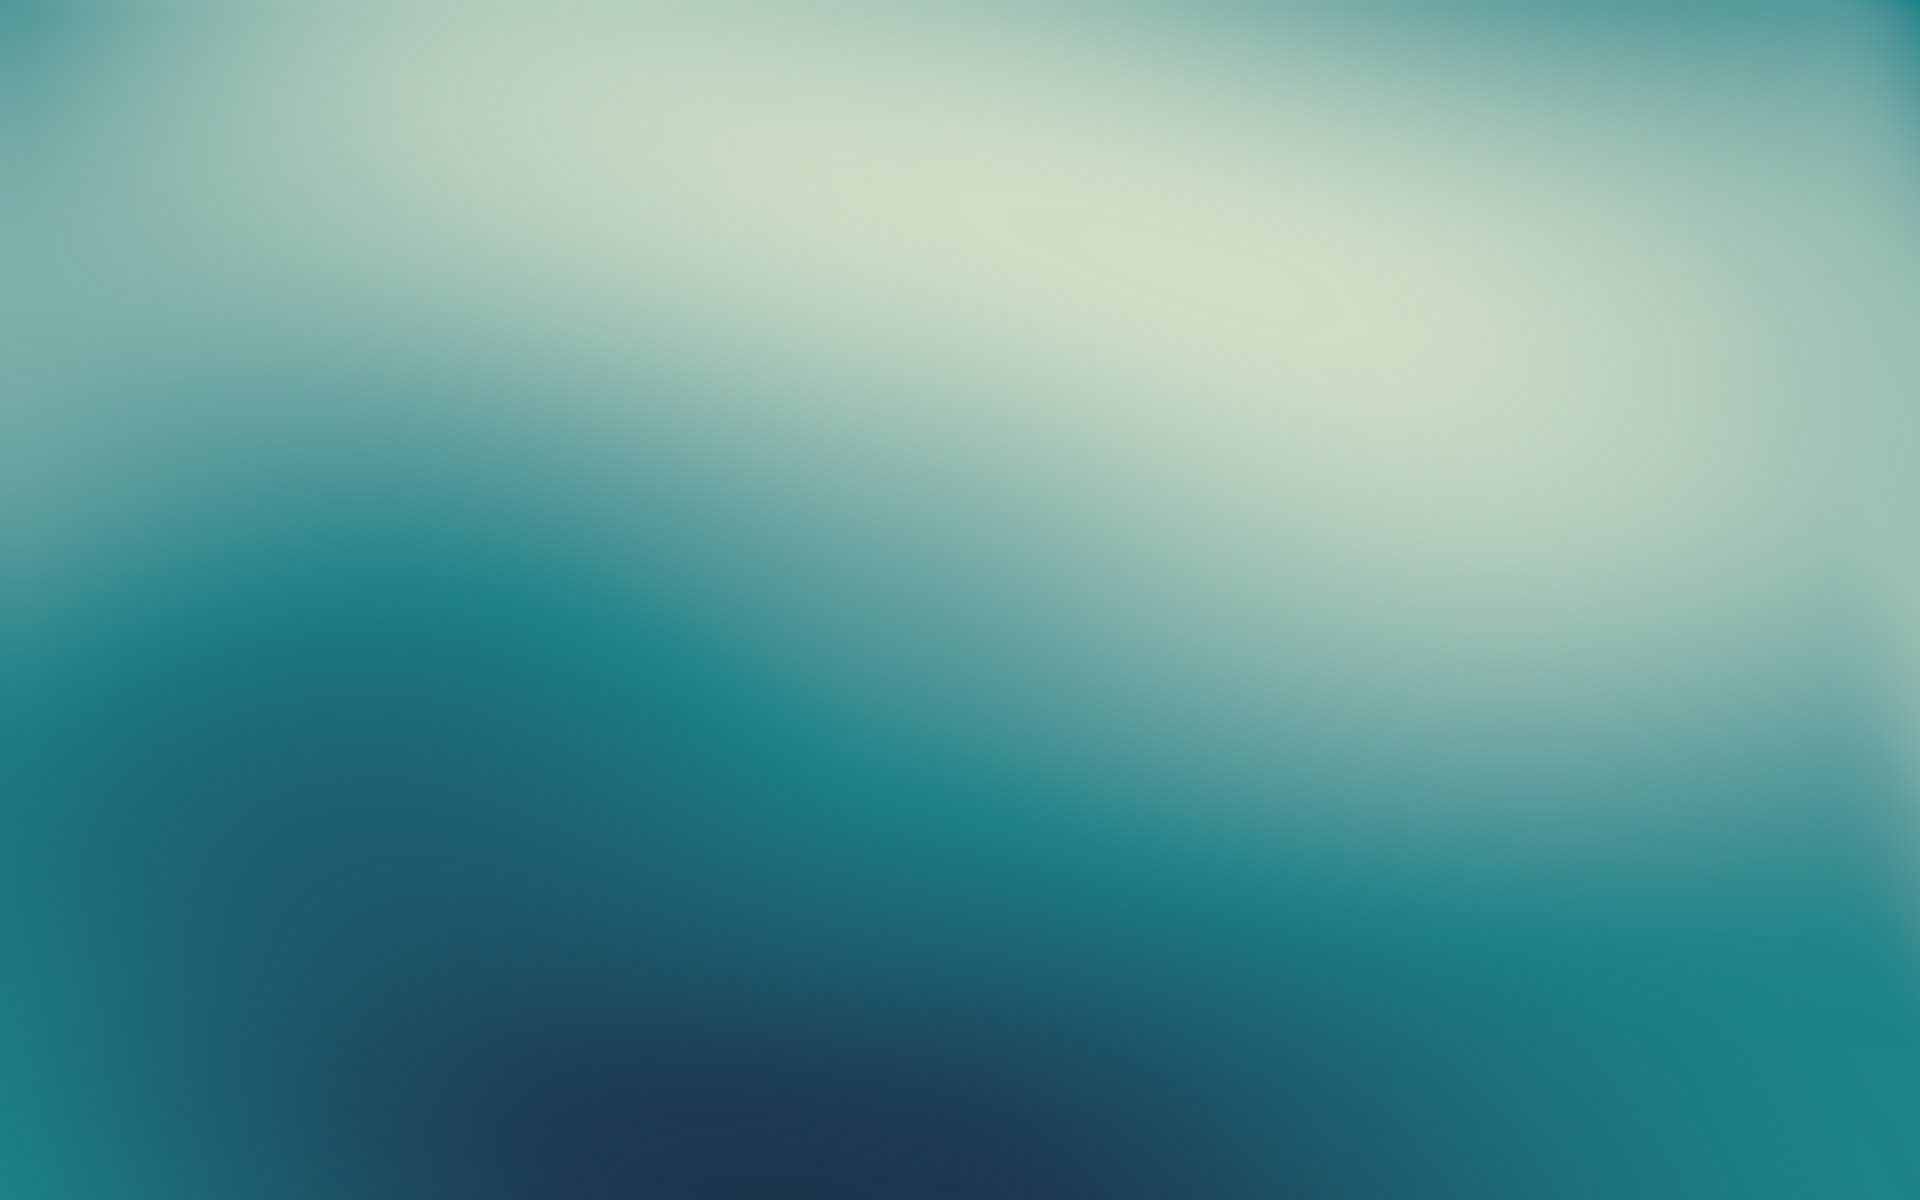 abstract blue gaussian blur #b2pR